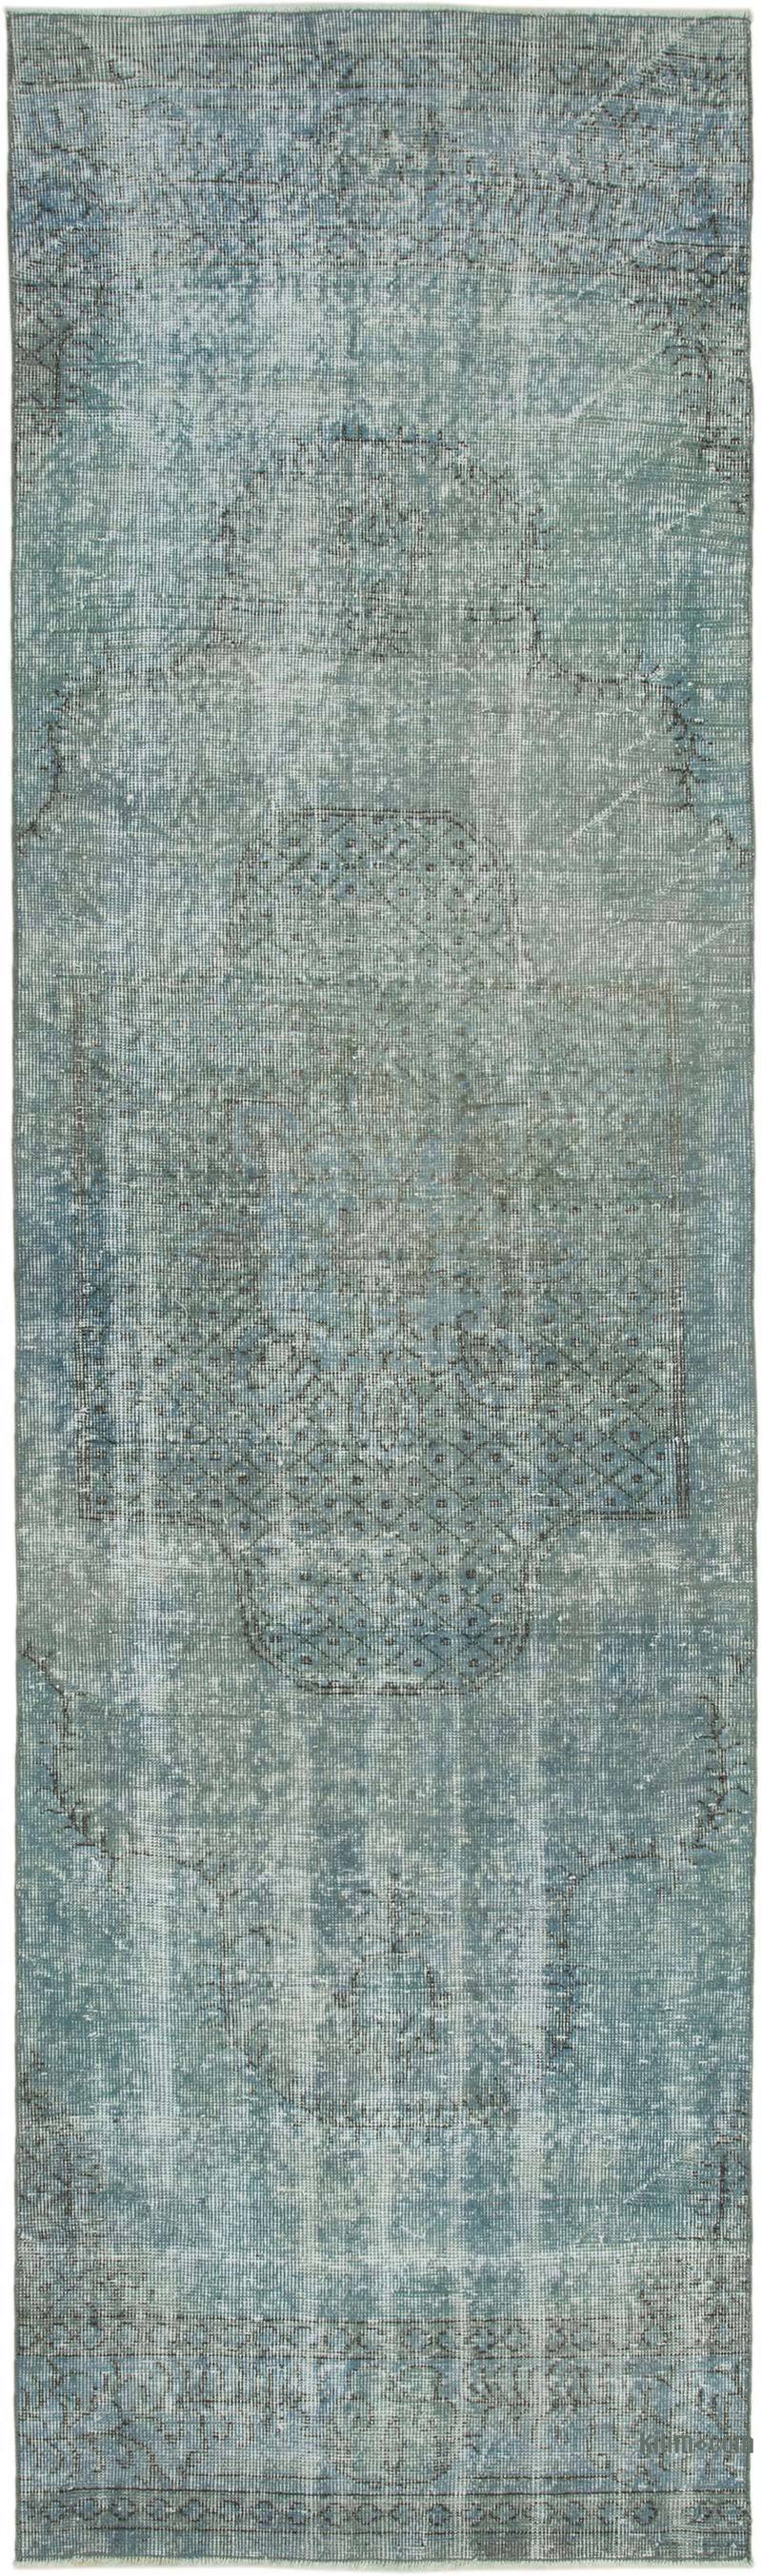 Açık Mavi Boyalı El Dokuma Vintage Halı Yolluk - 90 cm x 315 cm - K0050152